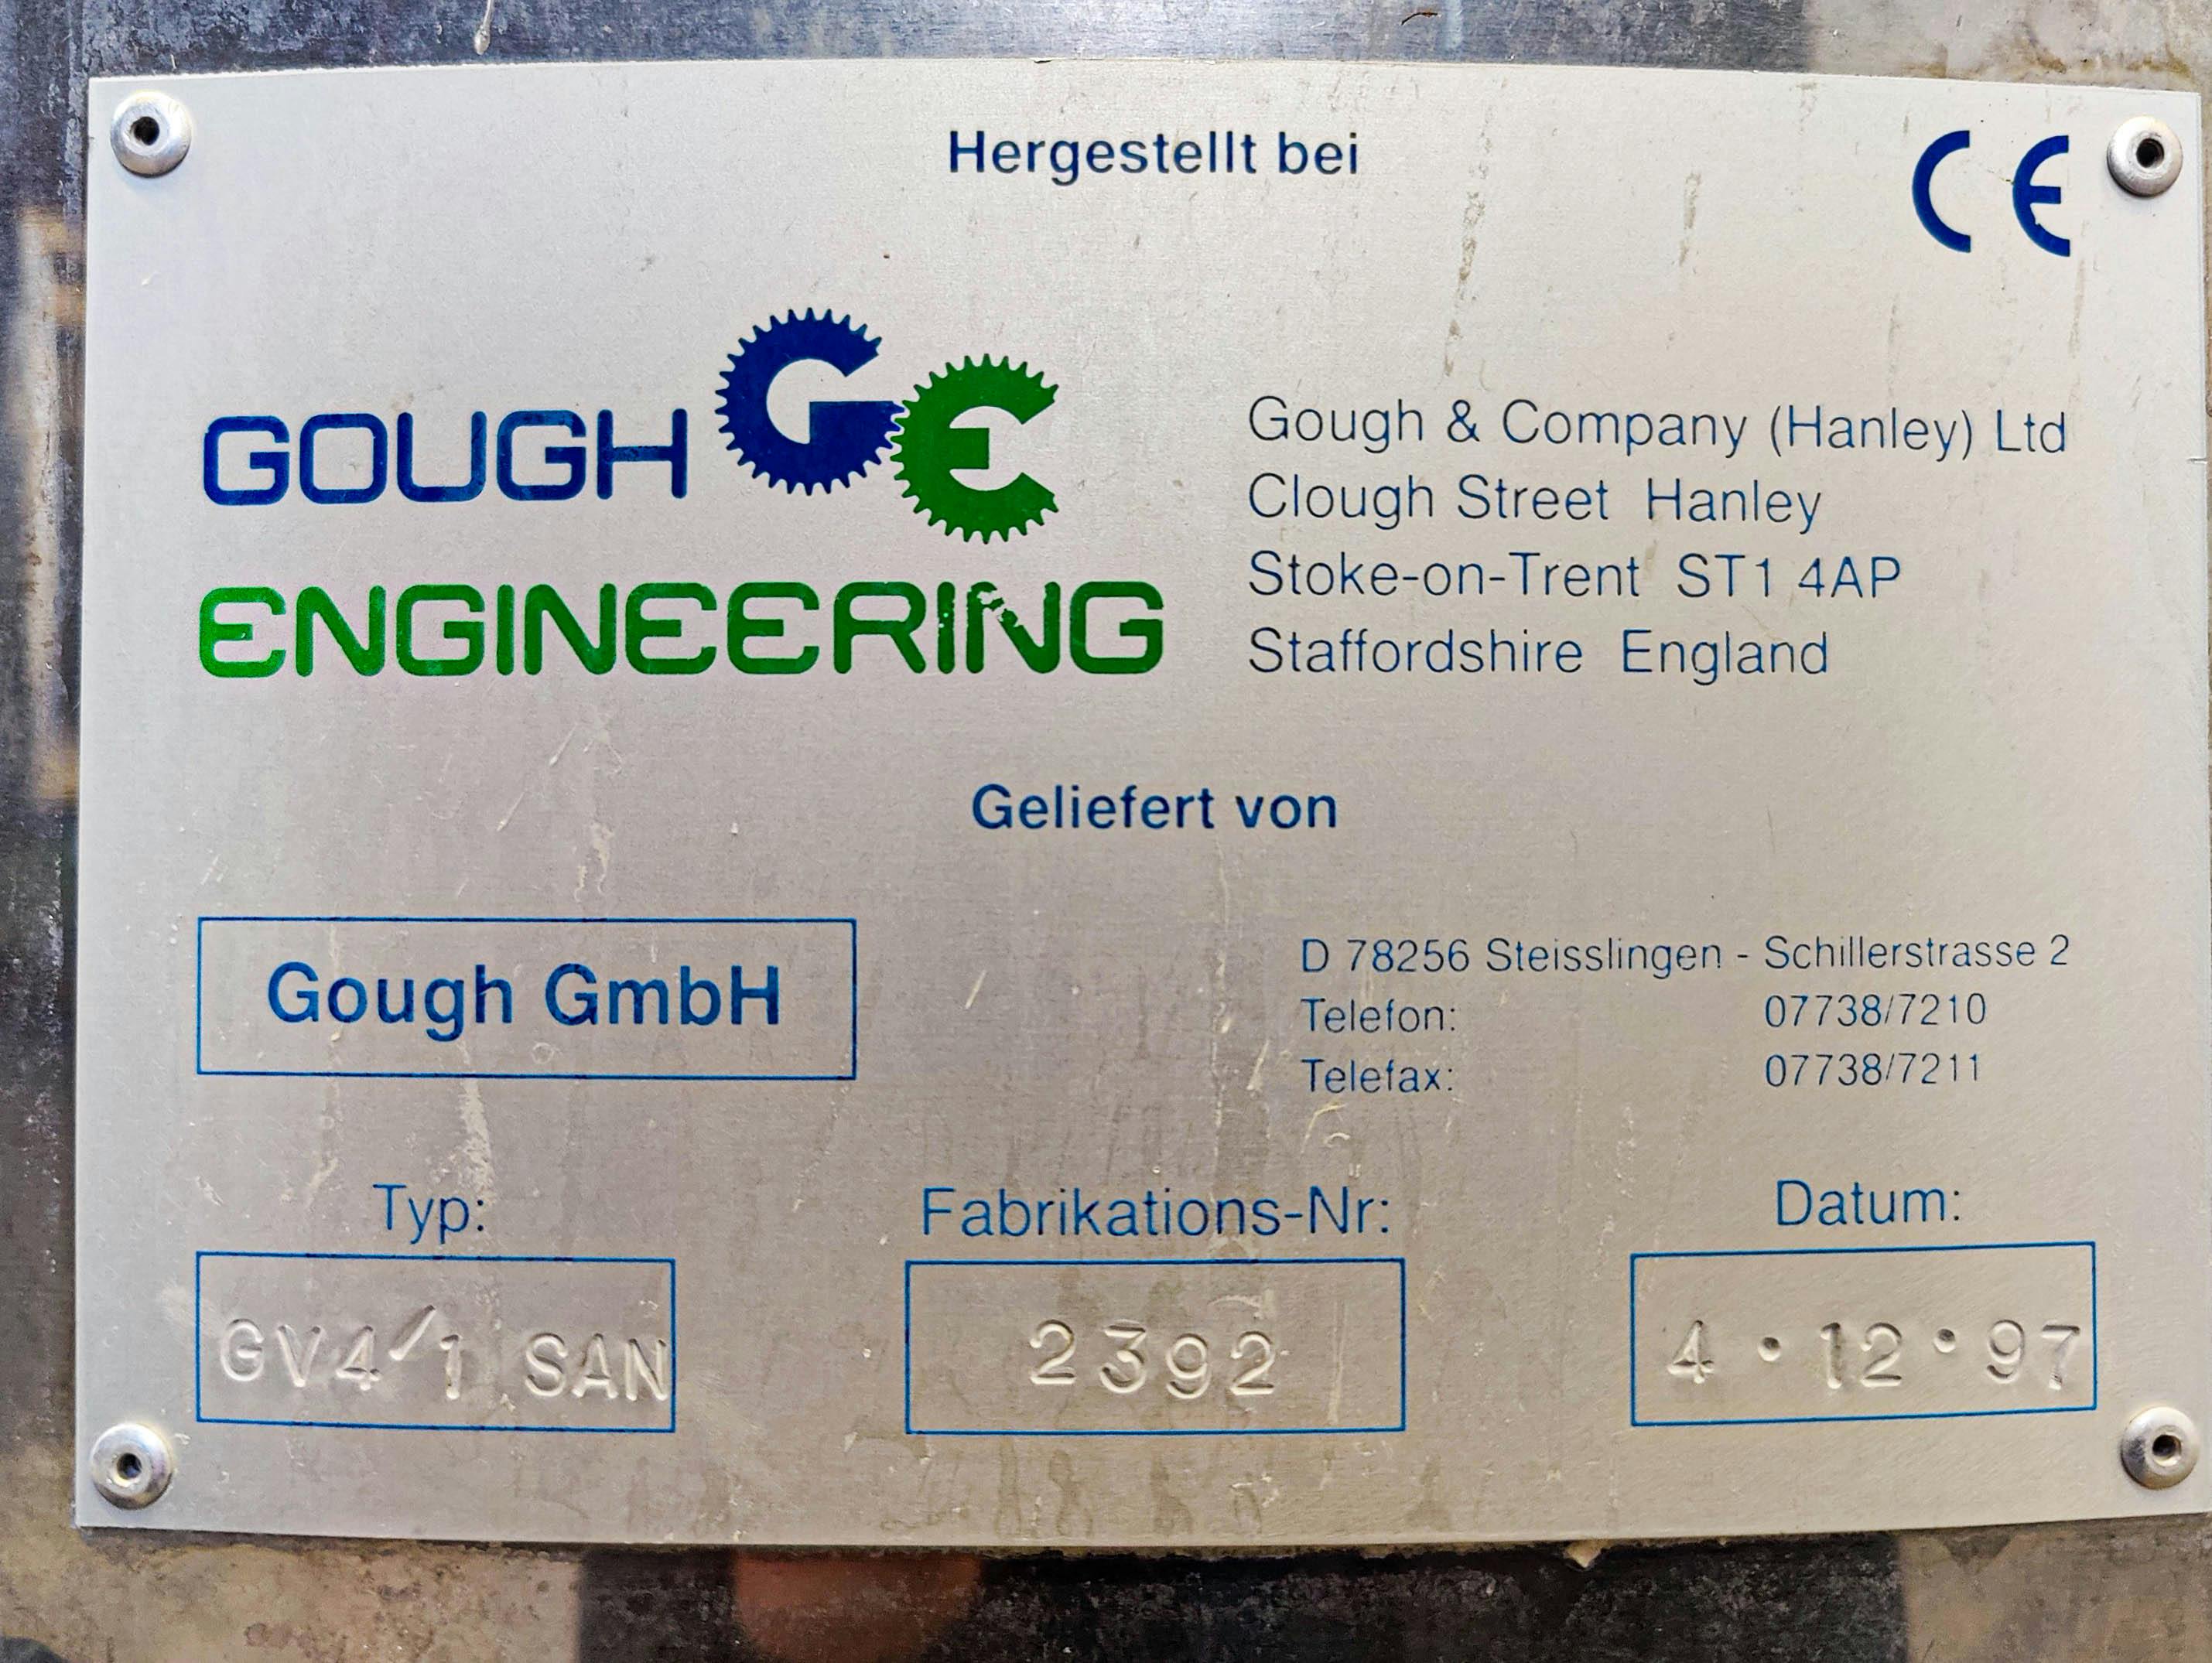 Gough & Co GV4/1 SAN - Vibracní síto - image 9